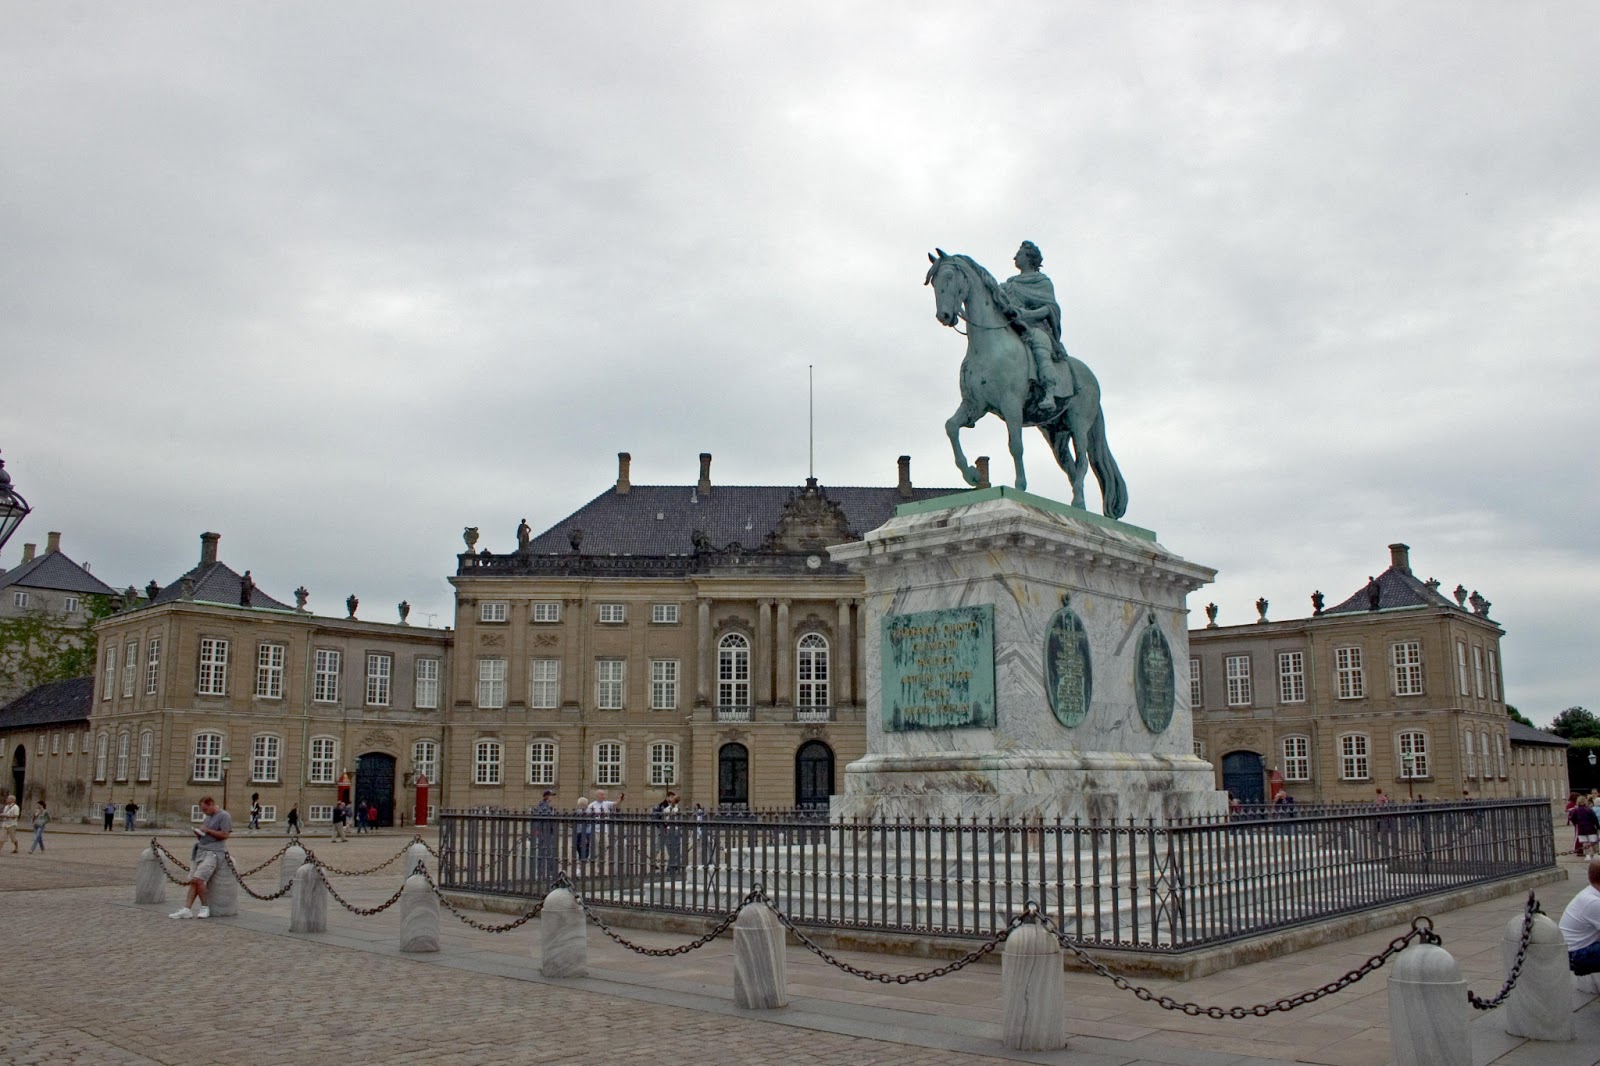 everydaywatchcountry: Amalienborg Palace Denmark